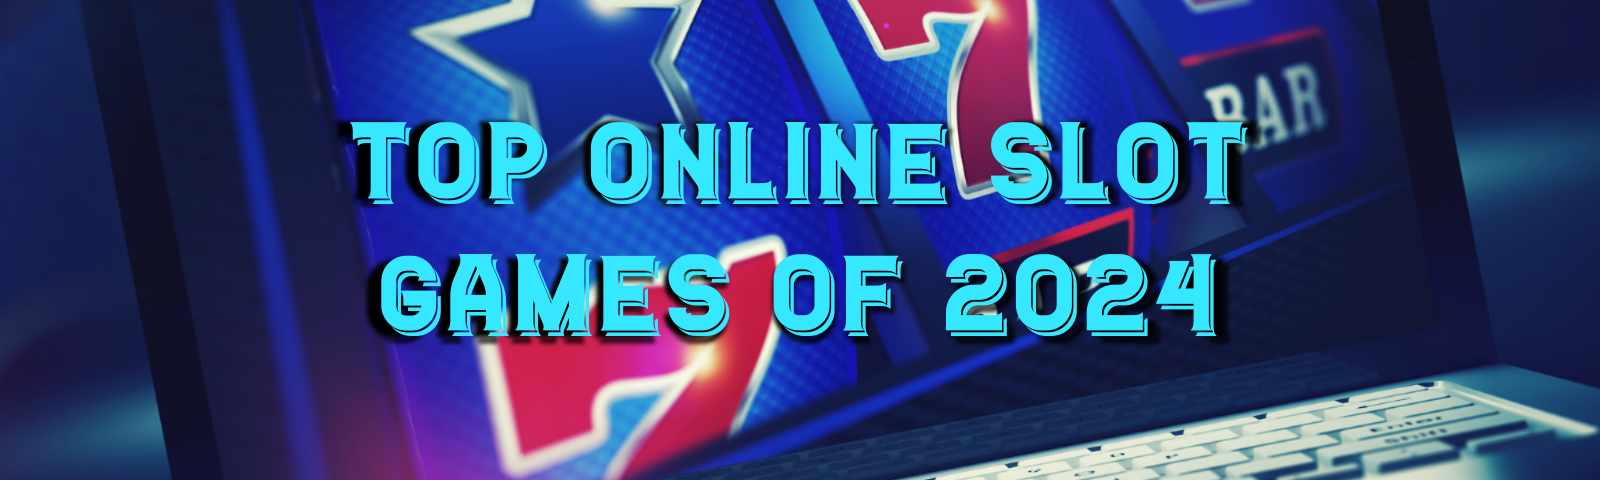 Top Online Slot Games of 2024 - Queen Casino Brand